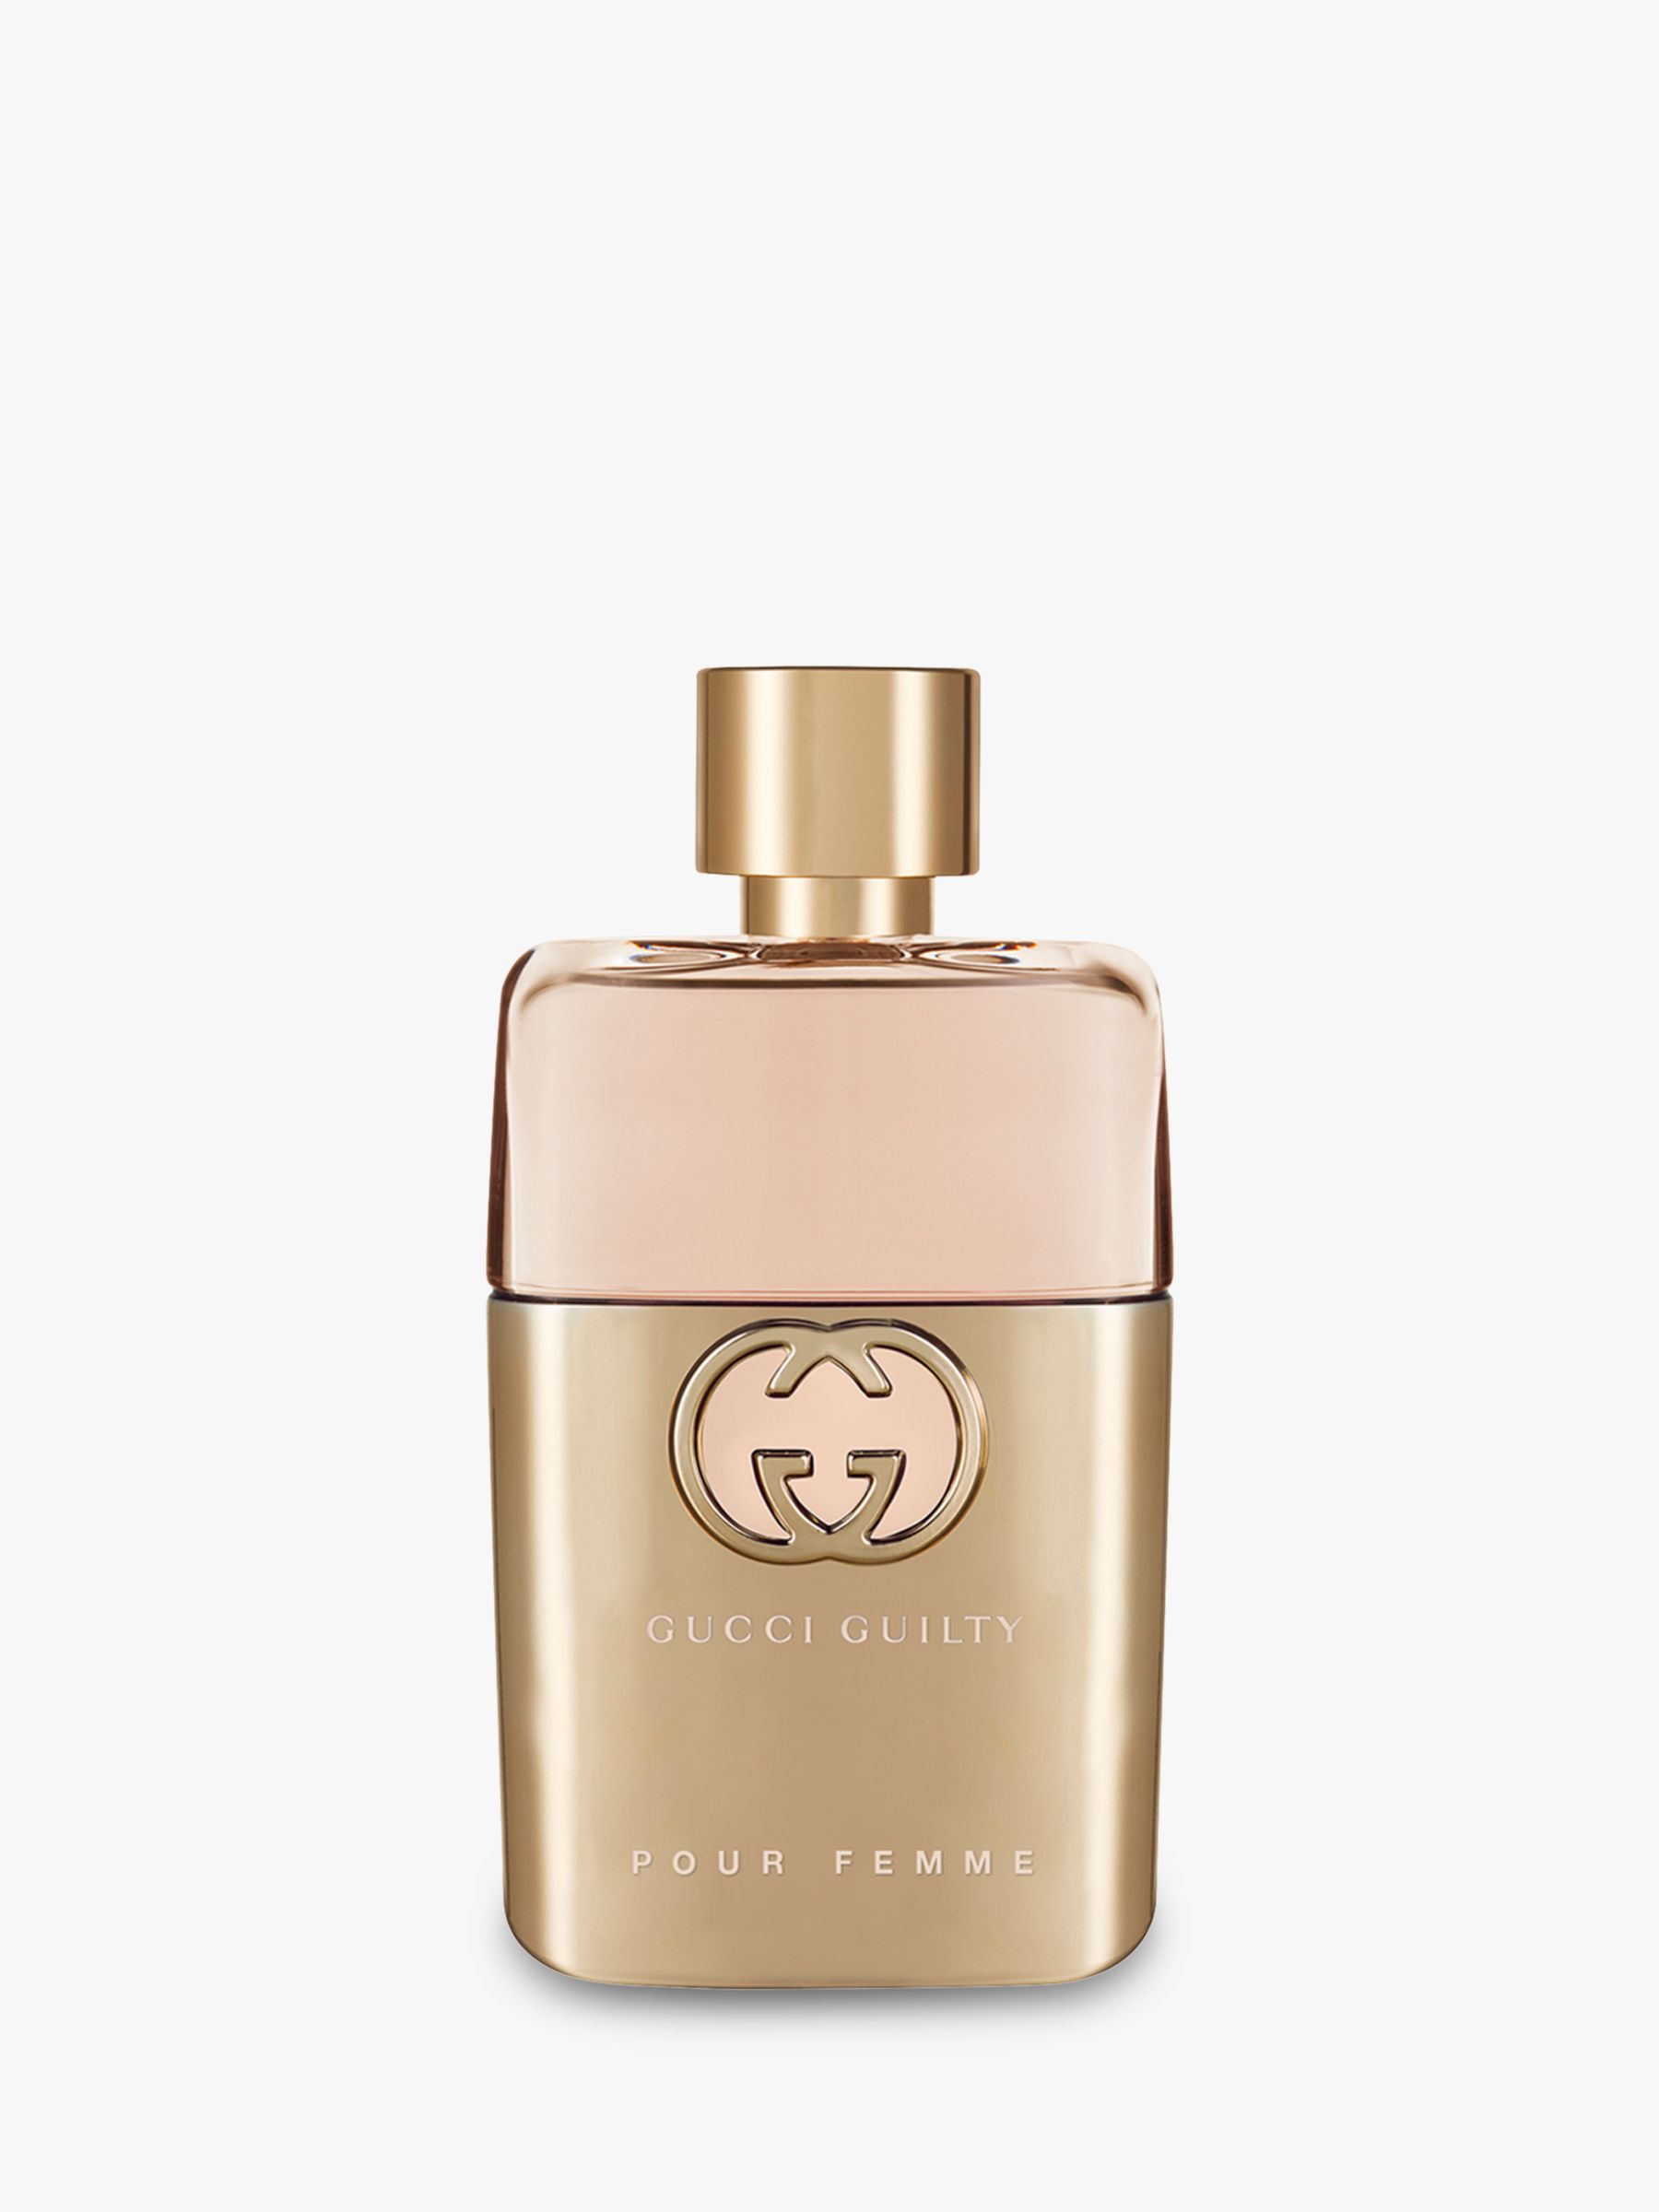 Gucci Guilty Eau de Parfum For Her, 50ml at John Lewis & Partners